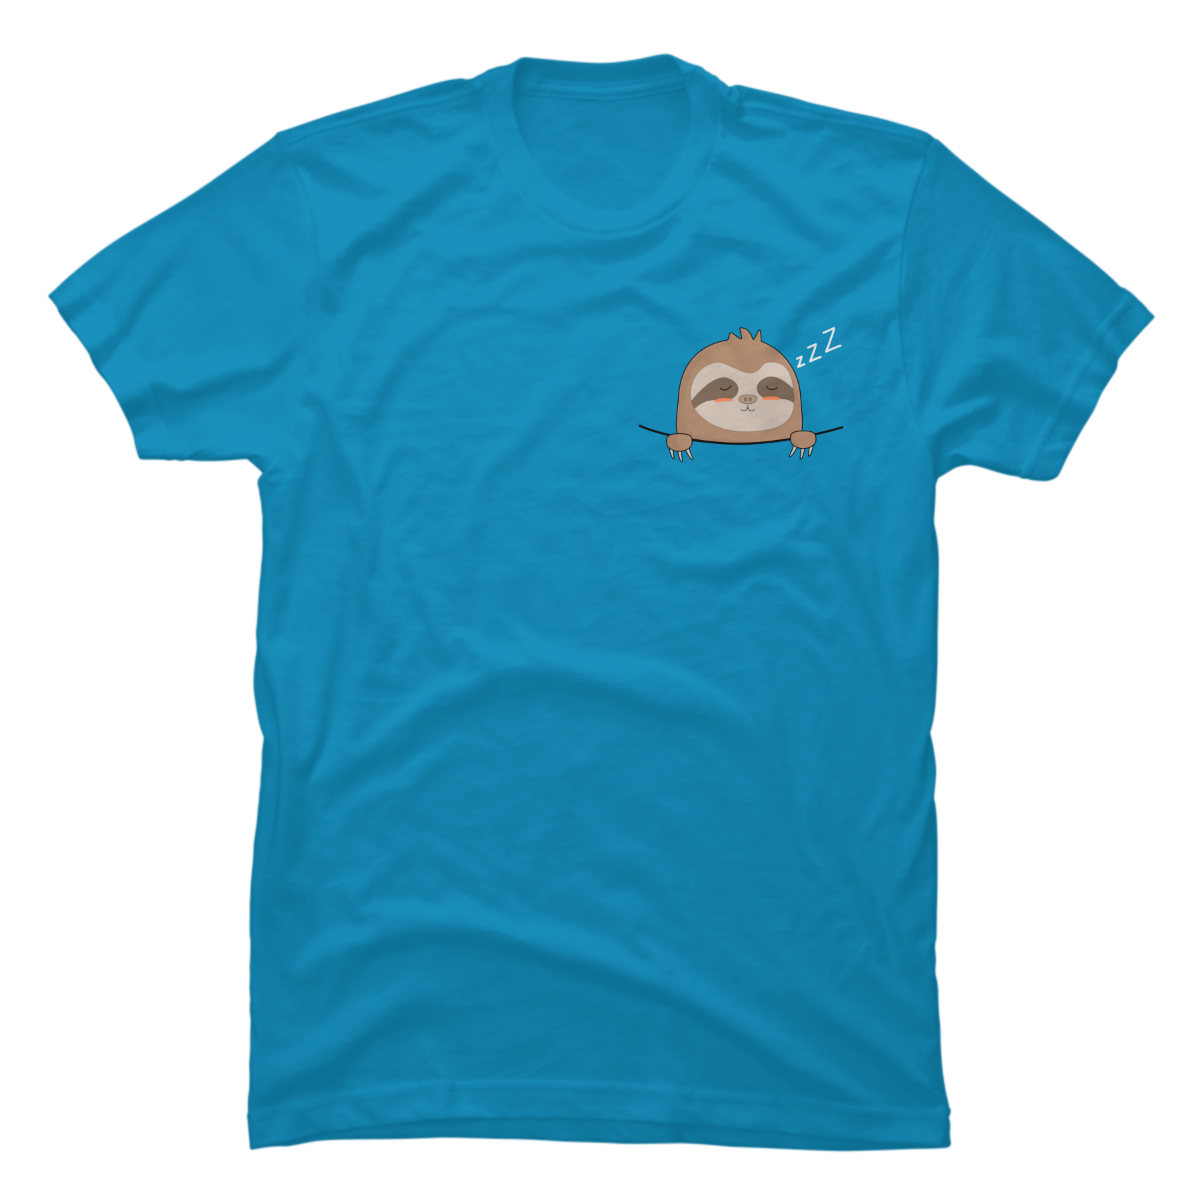 sloth tee shirt